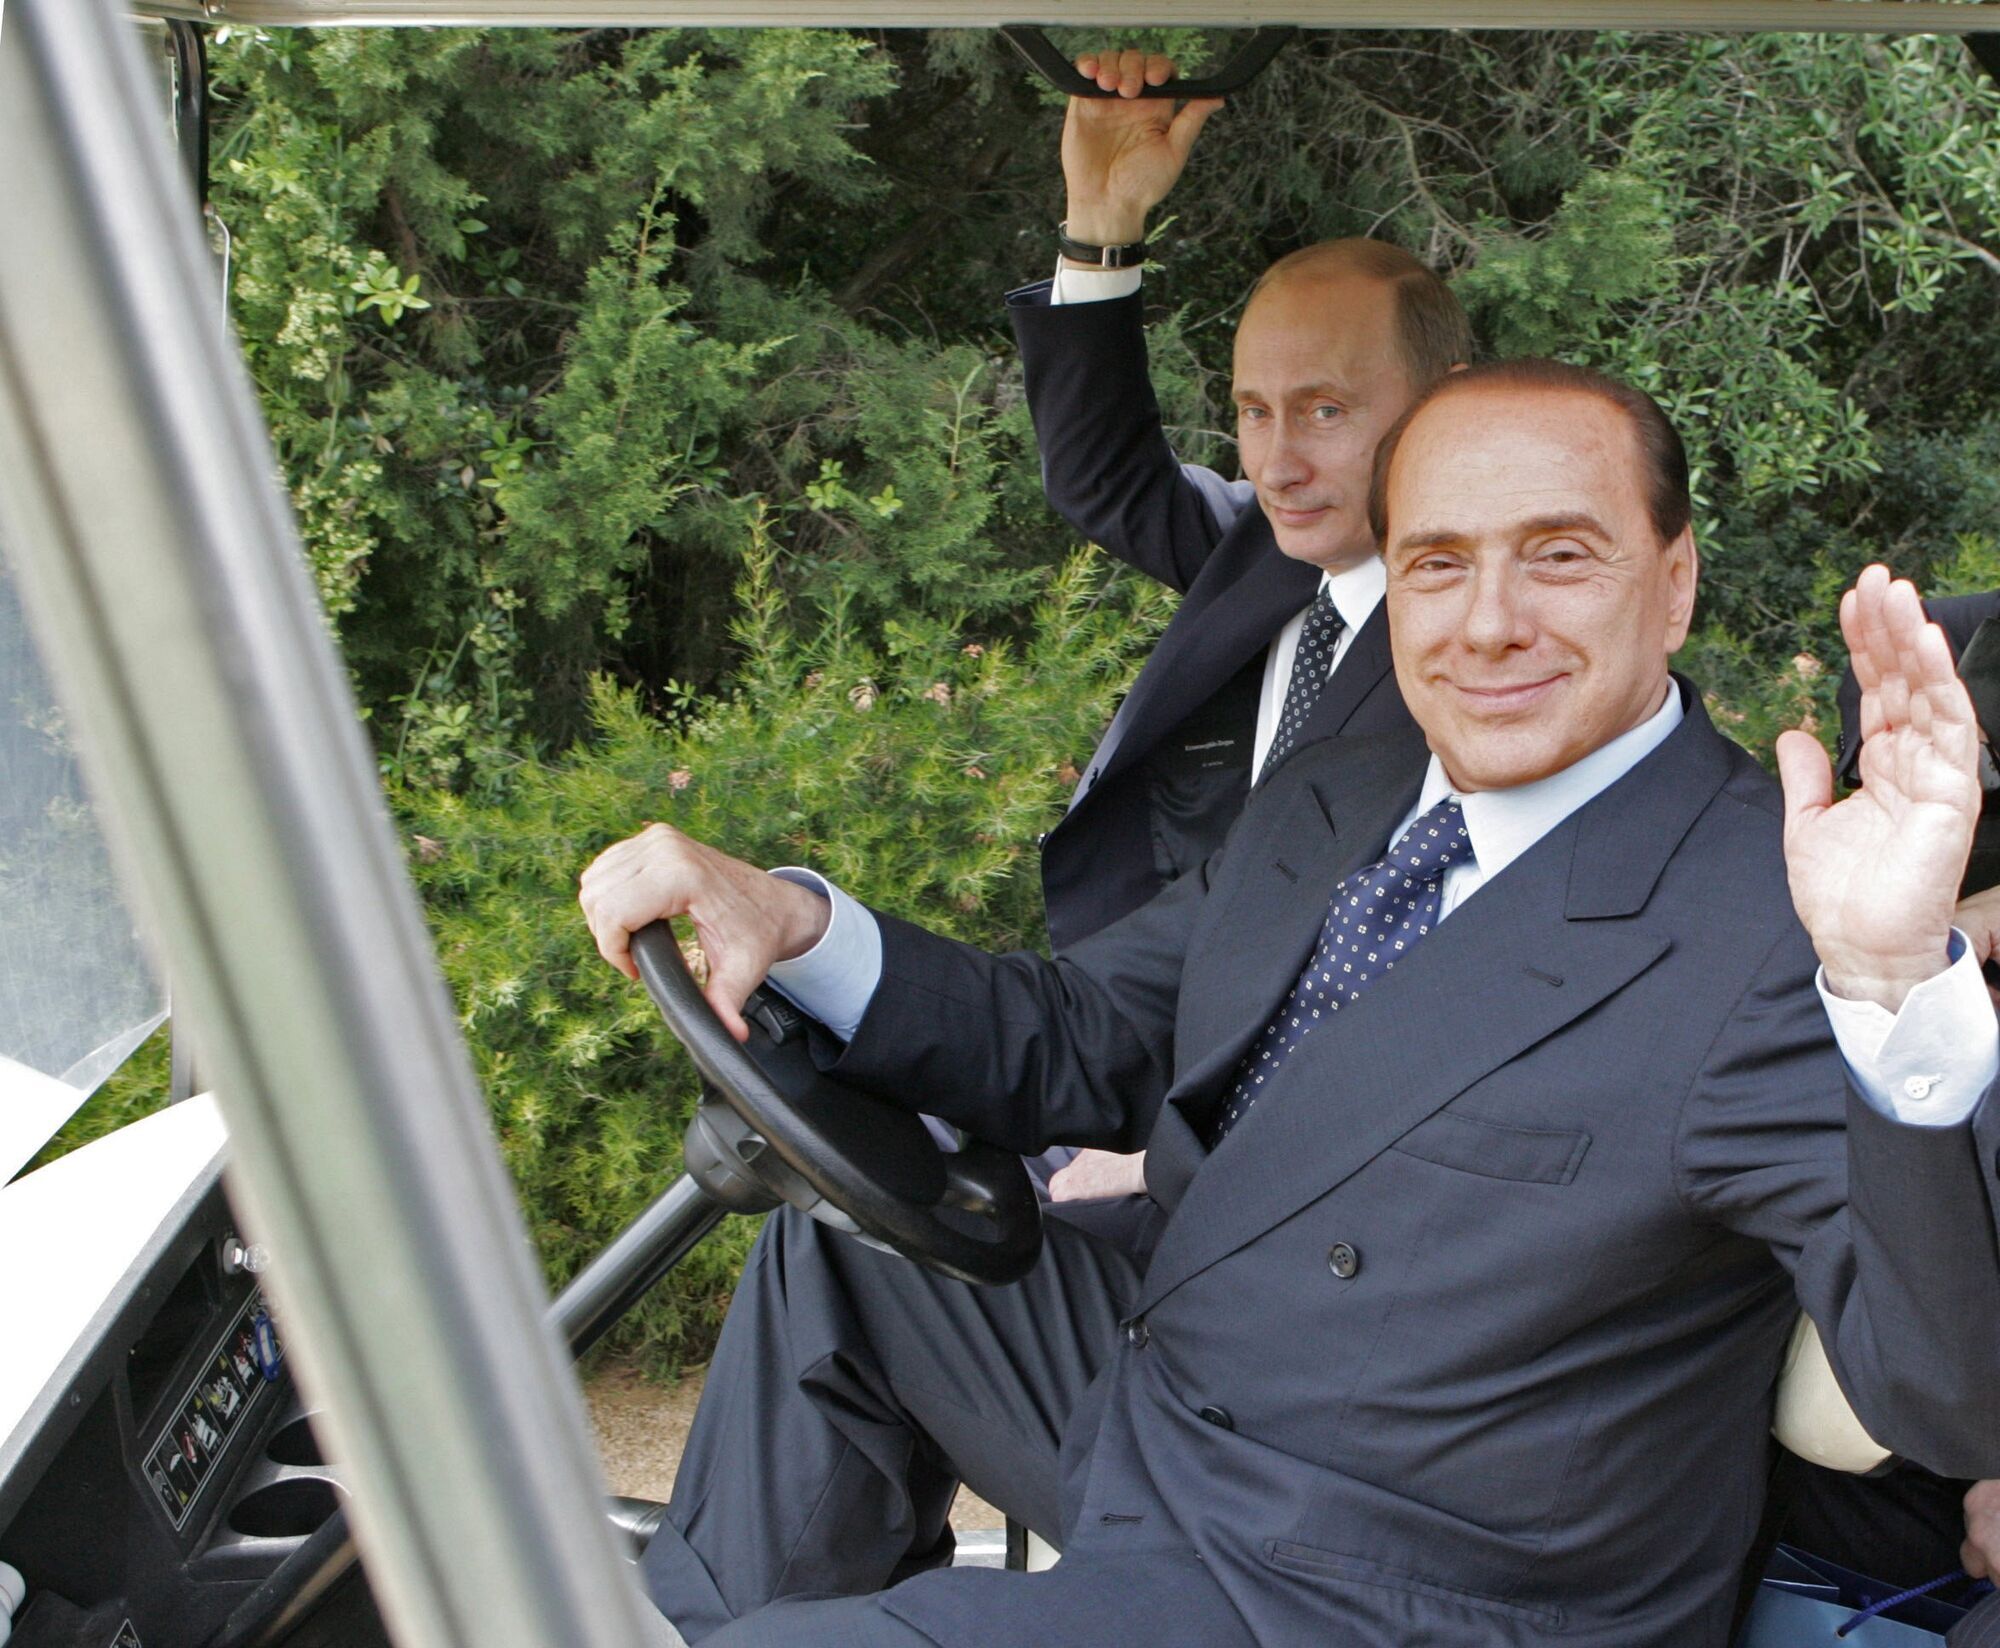 "Чувствую себя униженным": итальянец из УАФ наехал на Берлускони после слов о Зеленском и Путине